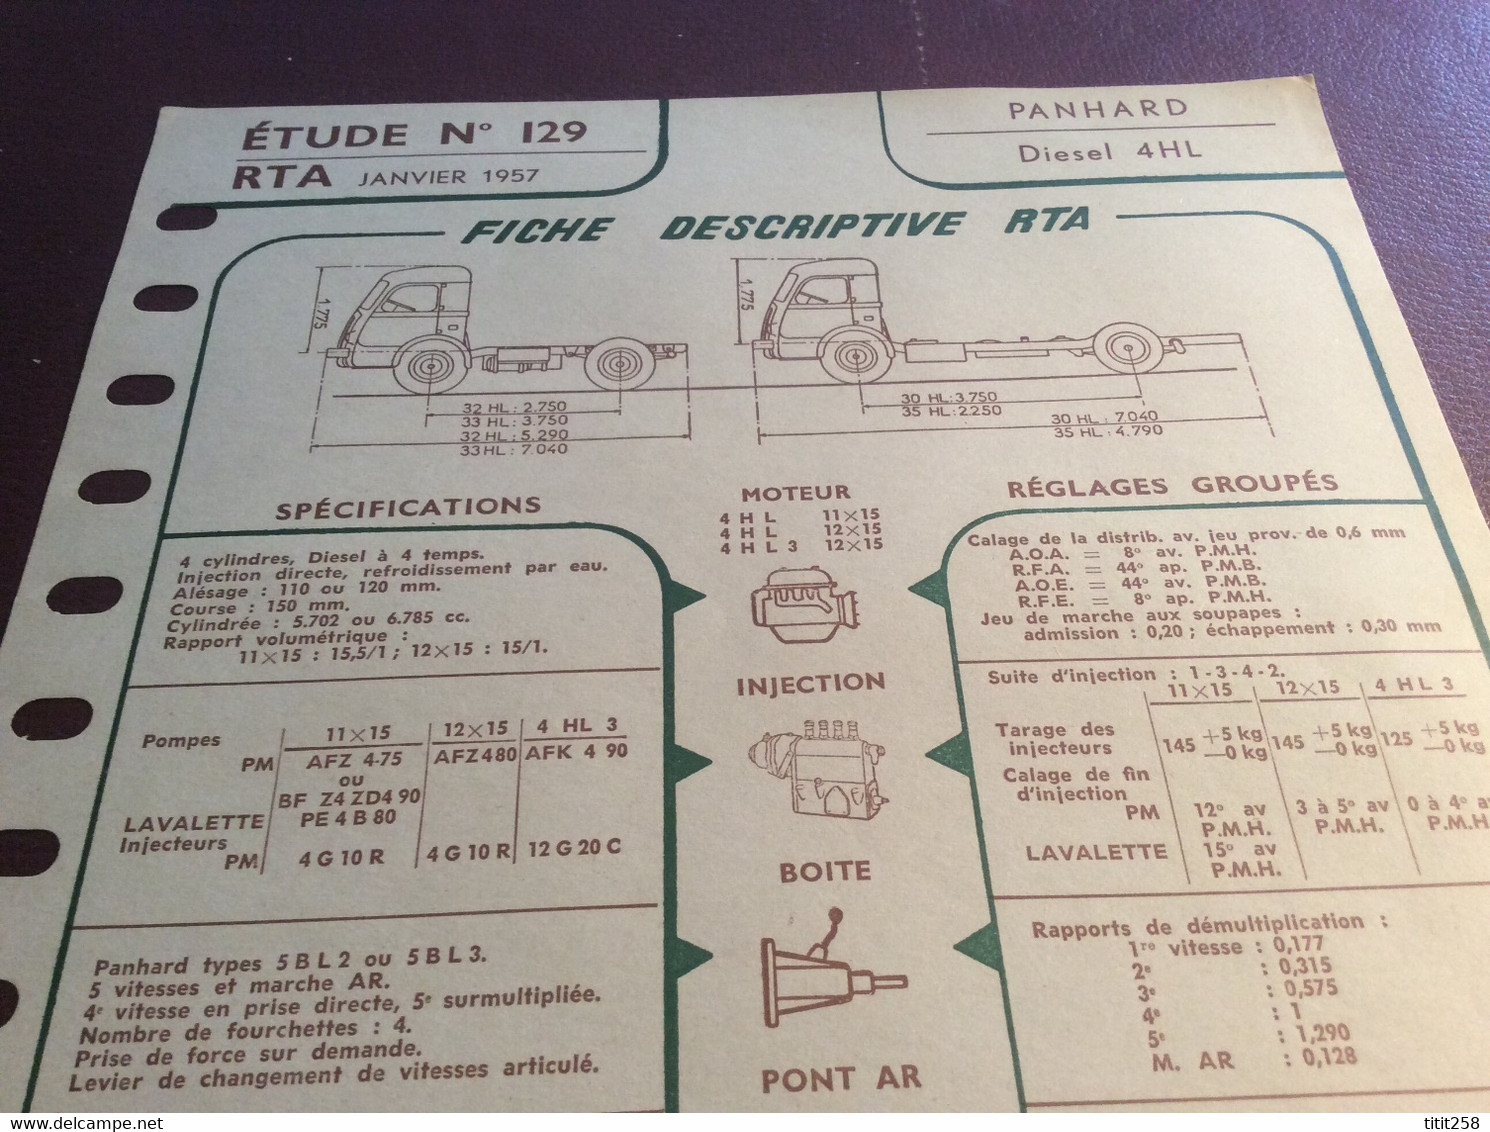 Fiche Descriptive RTA Panhard Diesel 4 HL . 1957 - LKW